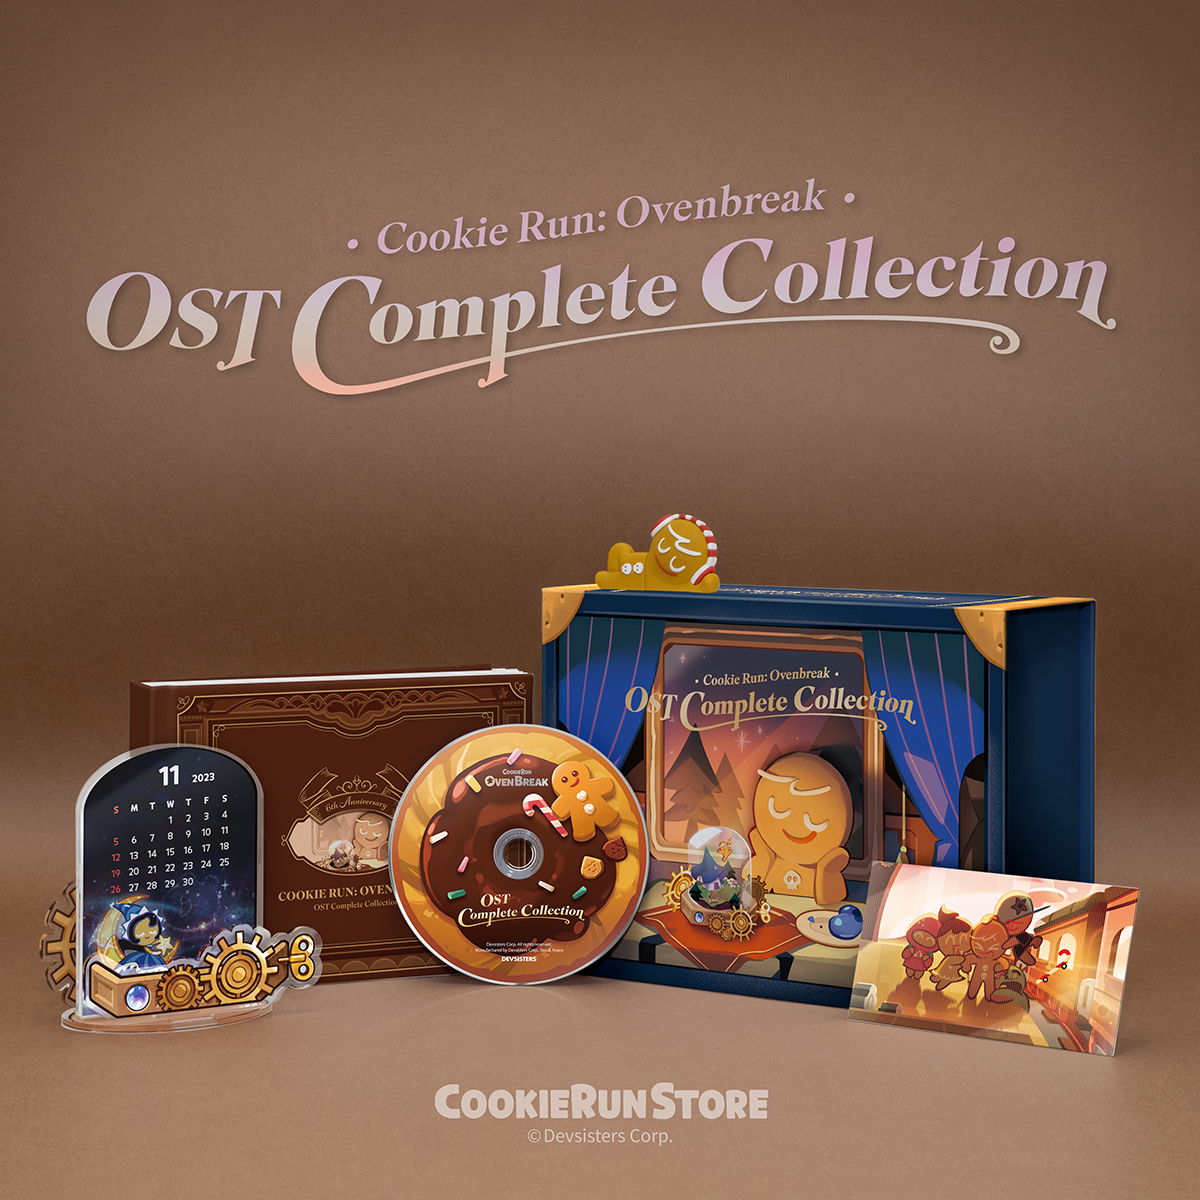 CookieRun: Ovenbreak遊戲原聲帶全集